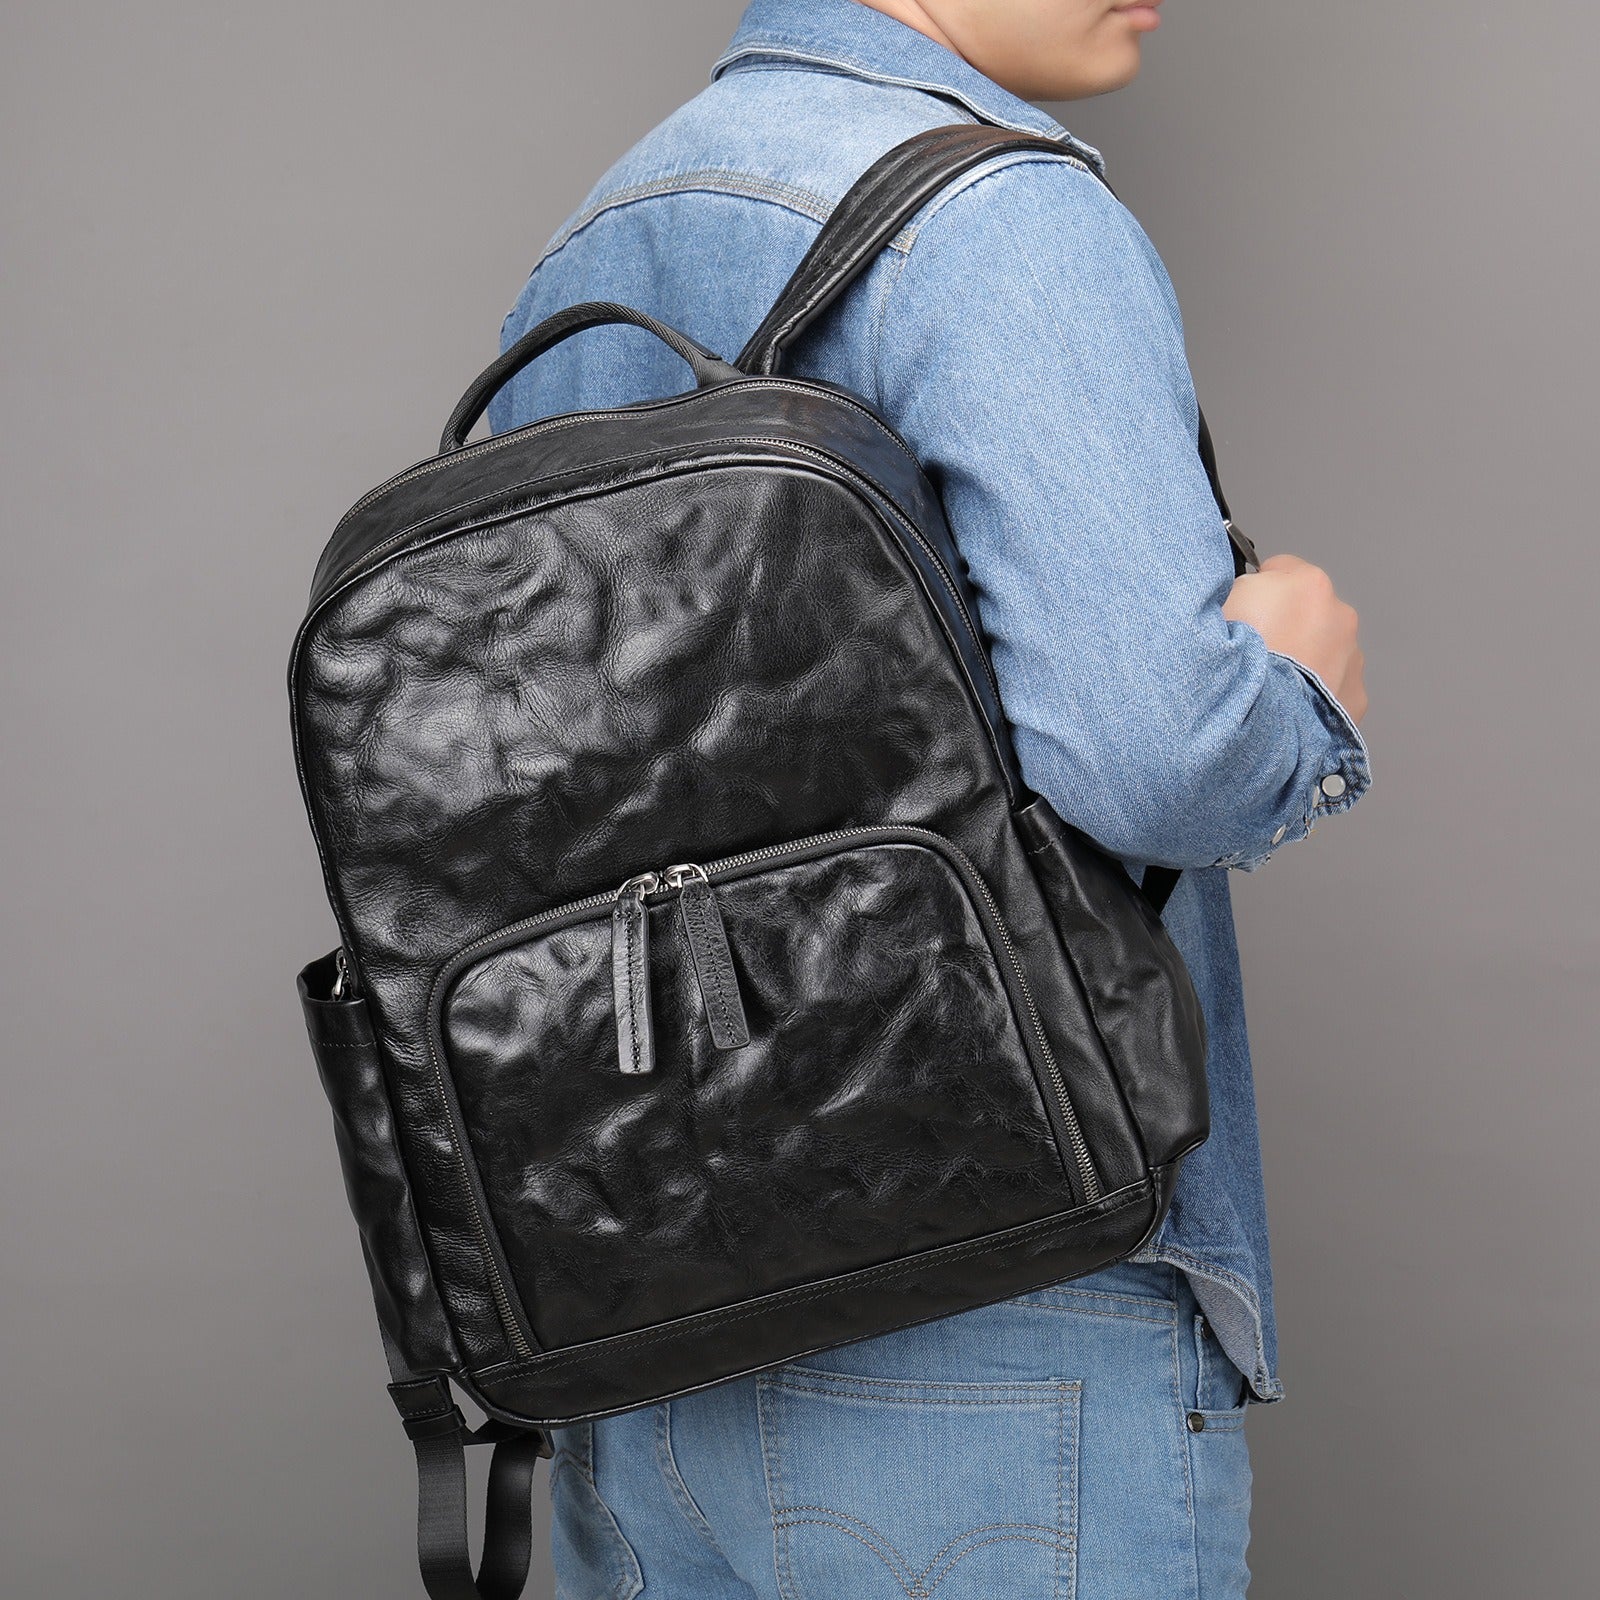 Black Leather Mens Backpack 15'' Laptop Rucksack Wrinkle School Backpack For Men